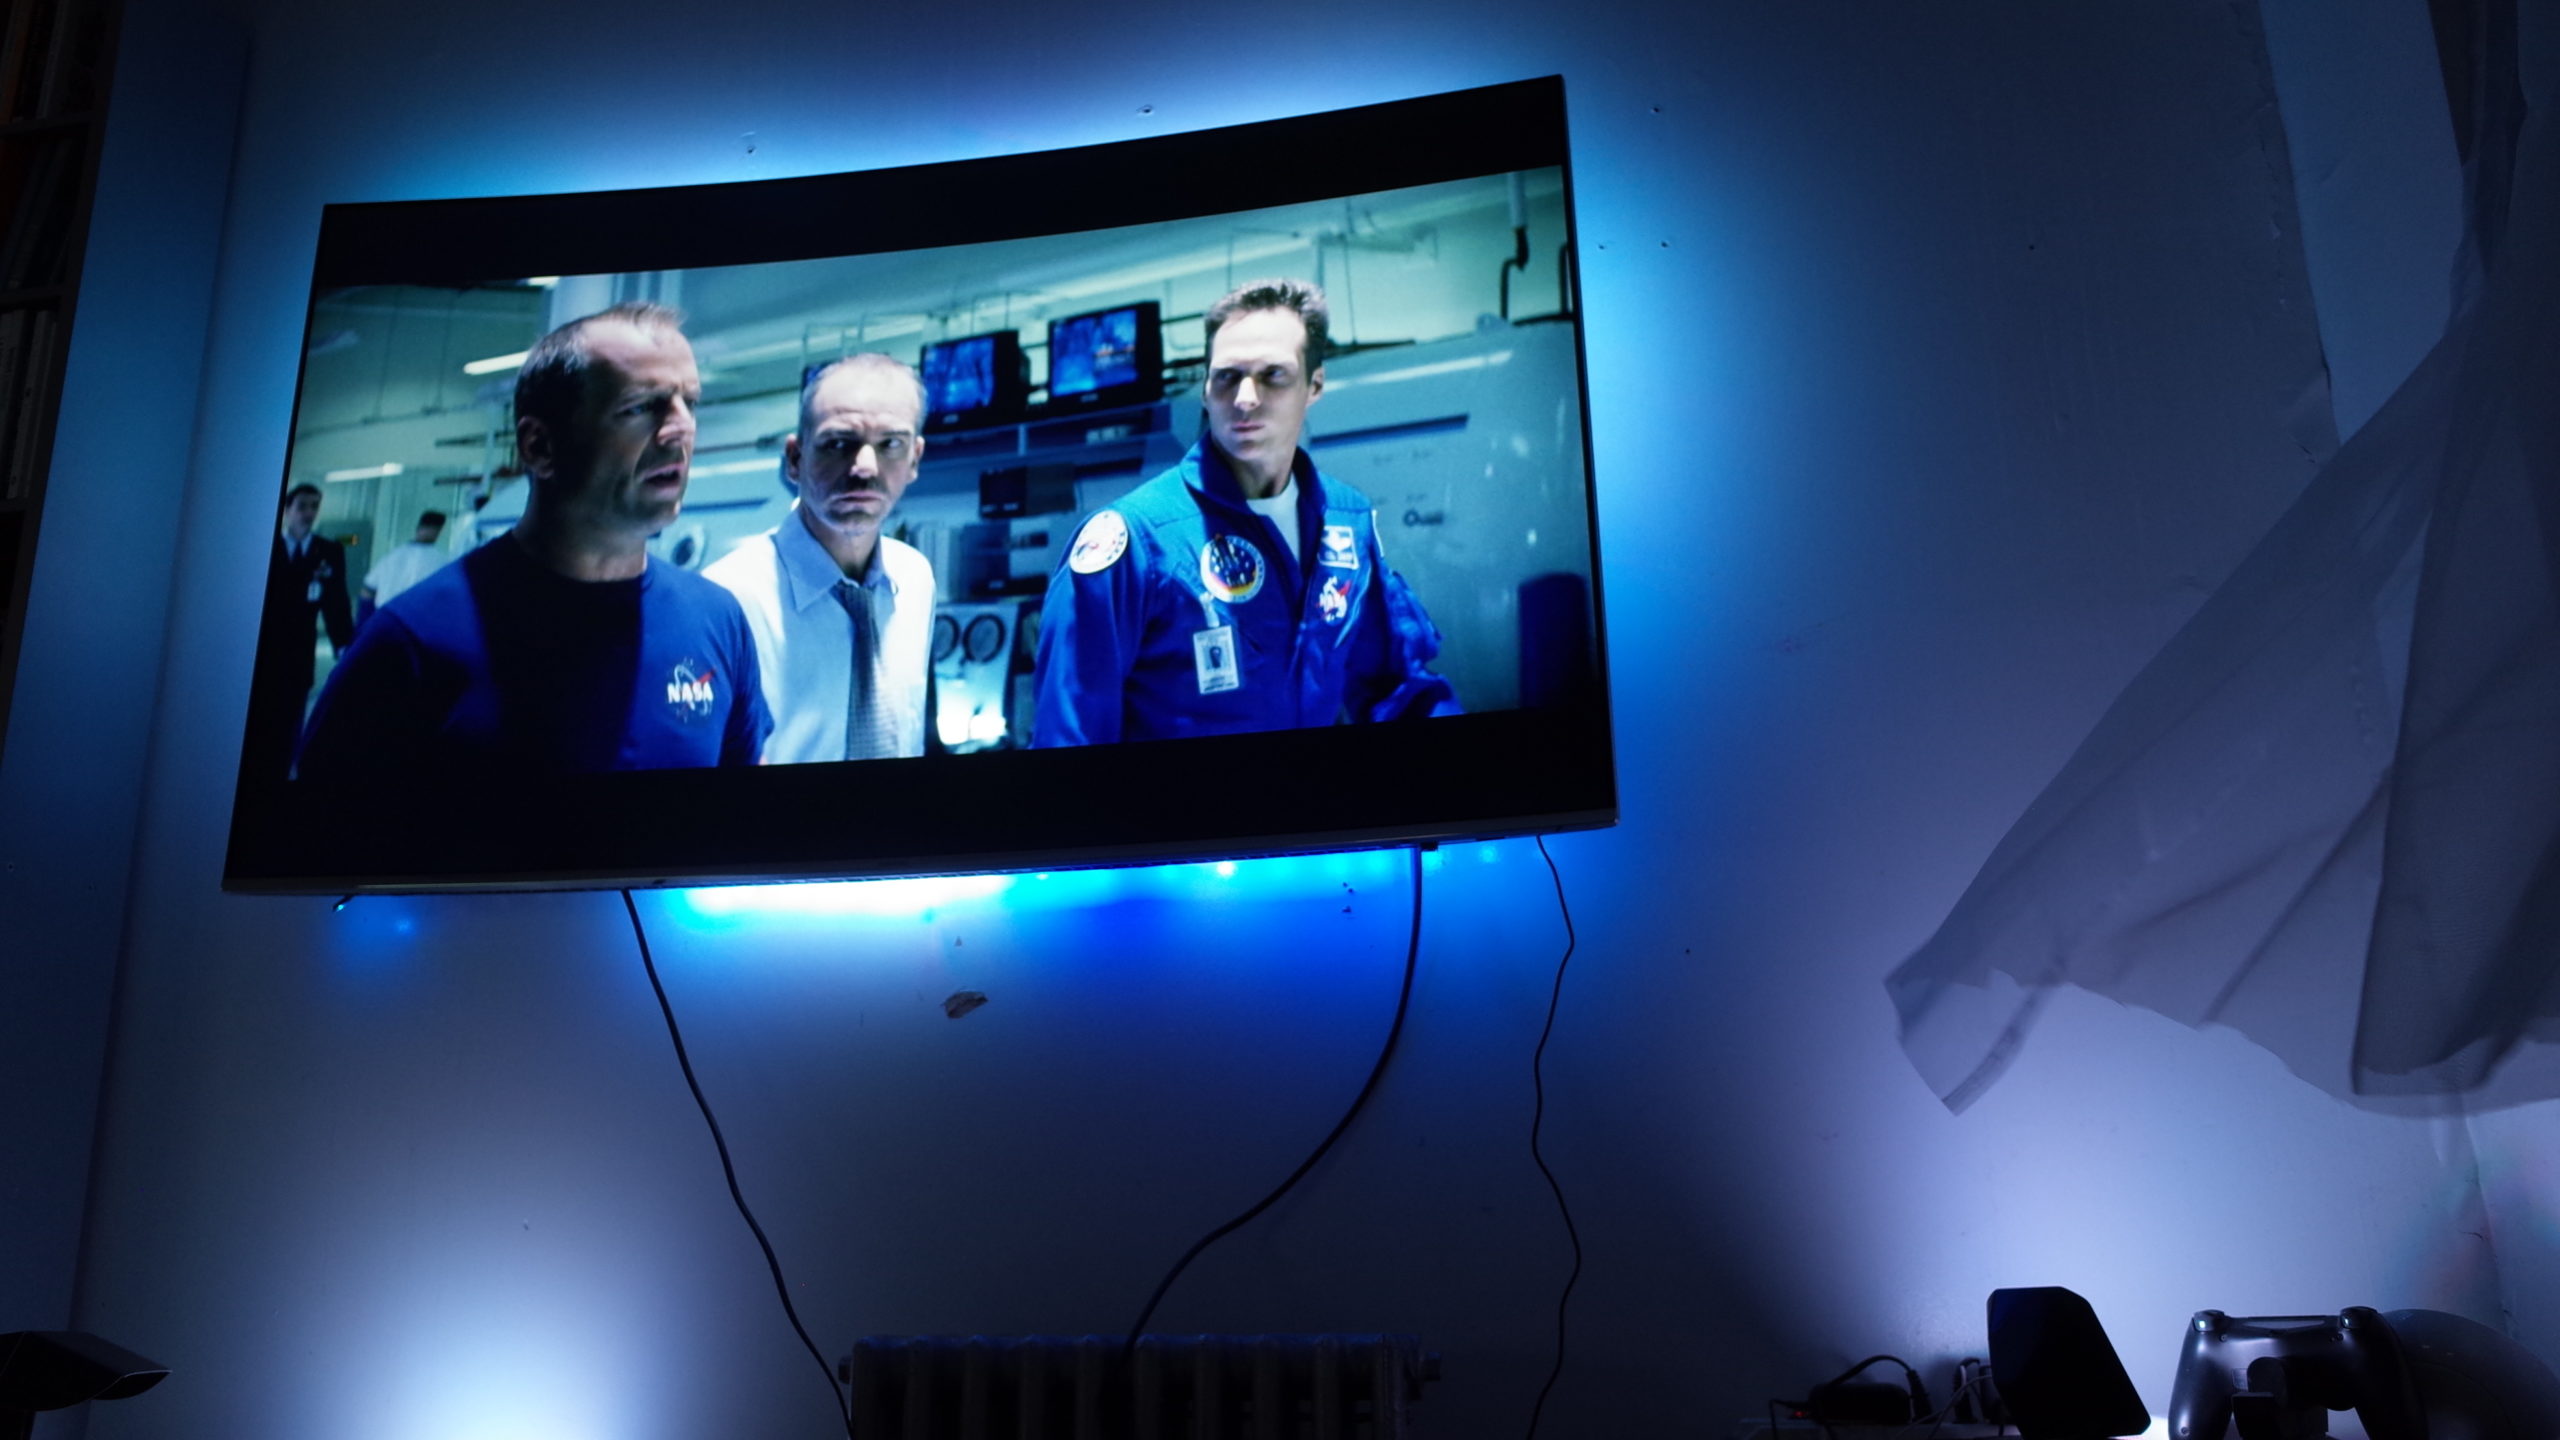 DreamScreen TV Backlighting Kit: The Gizmodo Review